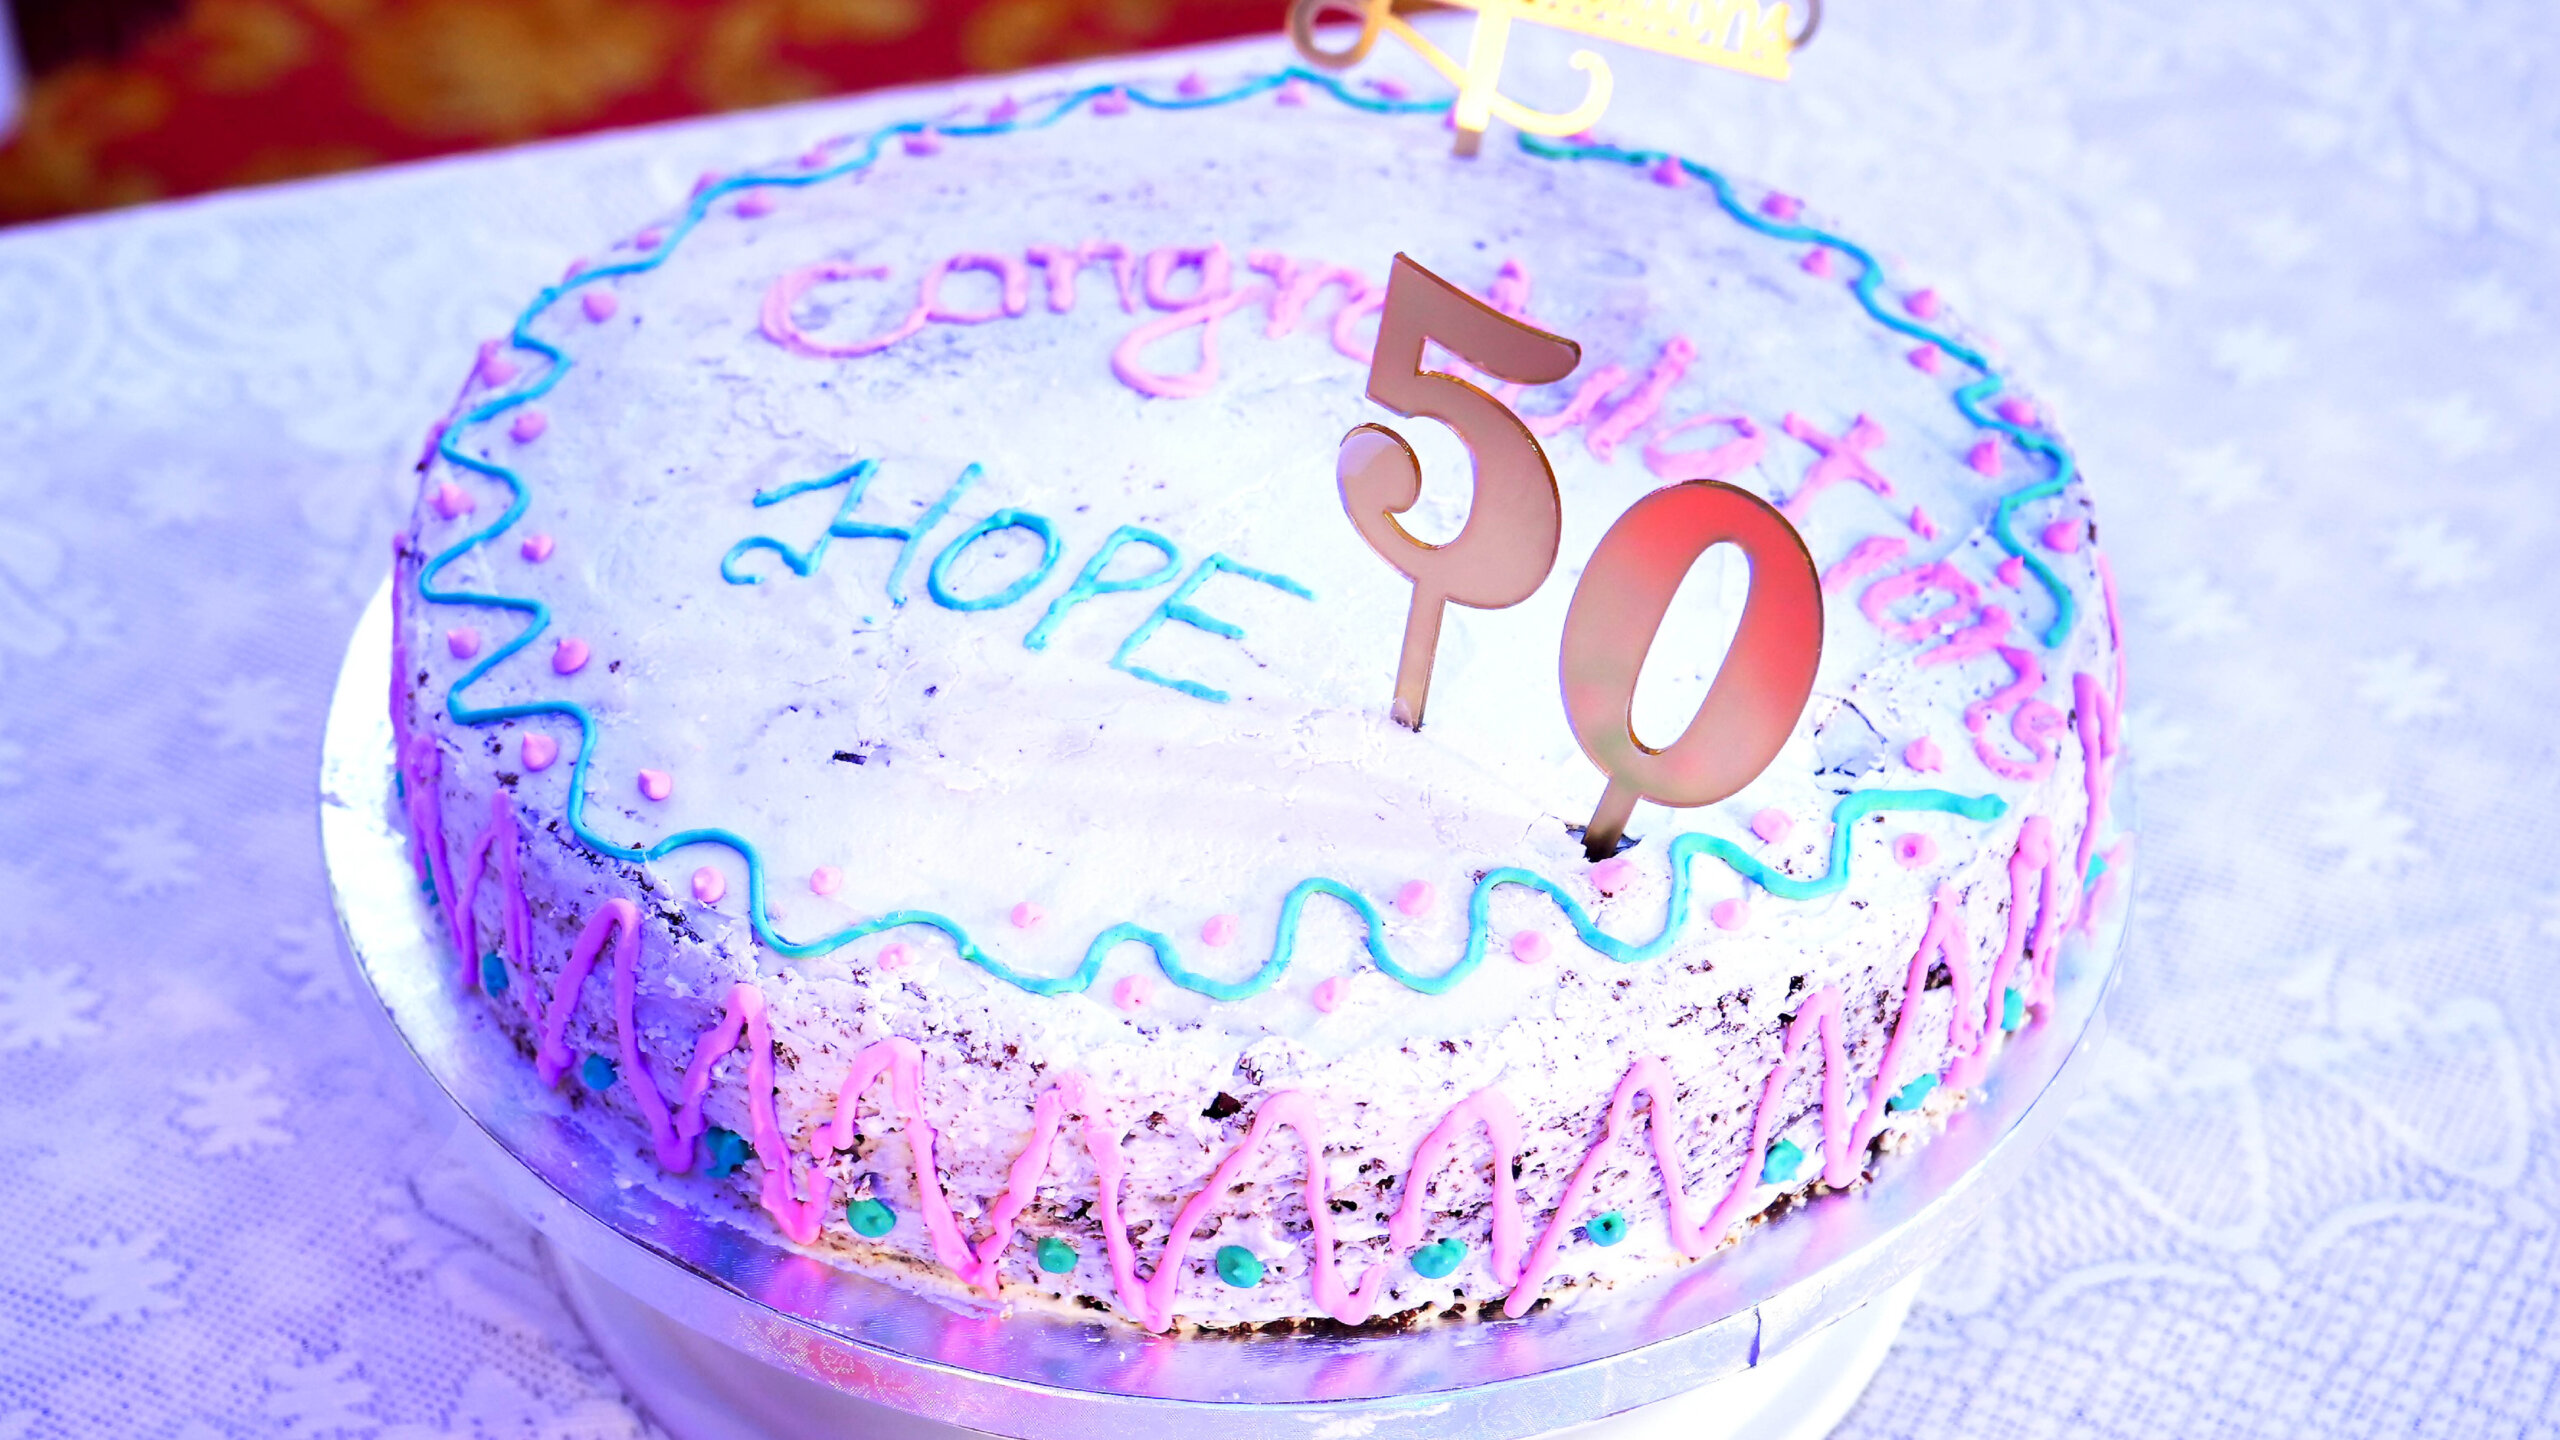 Kuchen für die Jubiläumsfeier von HOPE, Human Organisation for Pioneering in Education. Darauf geschrieben ist: Congratulations HOPE 50.